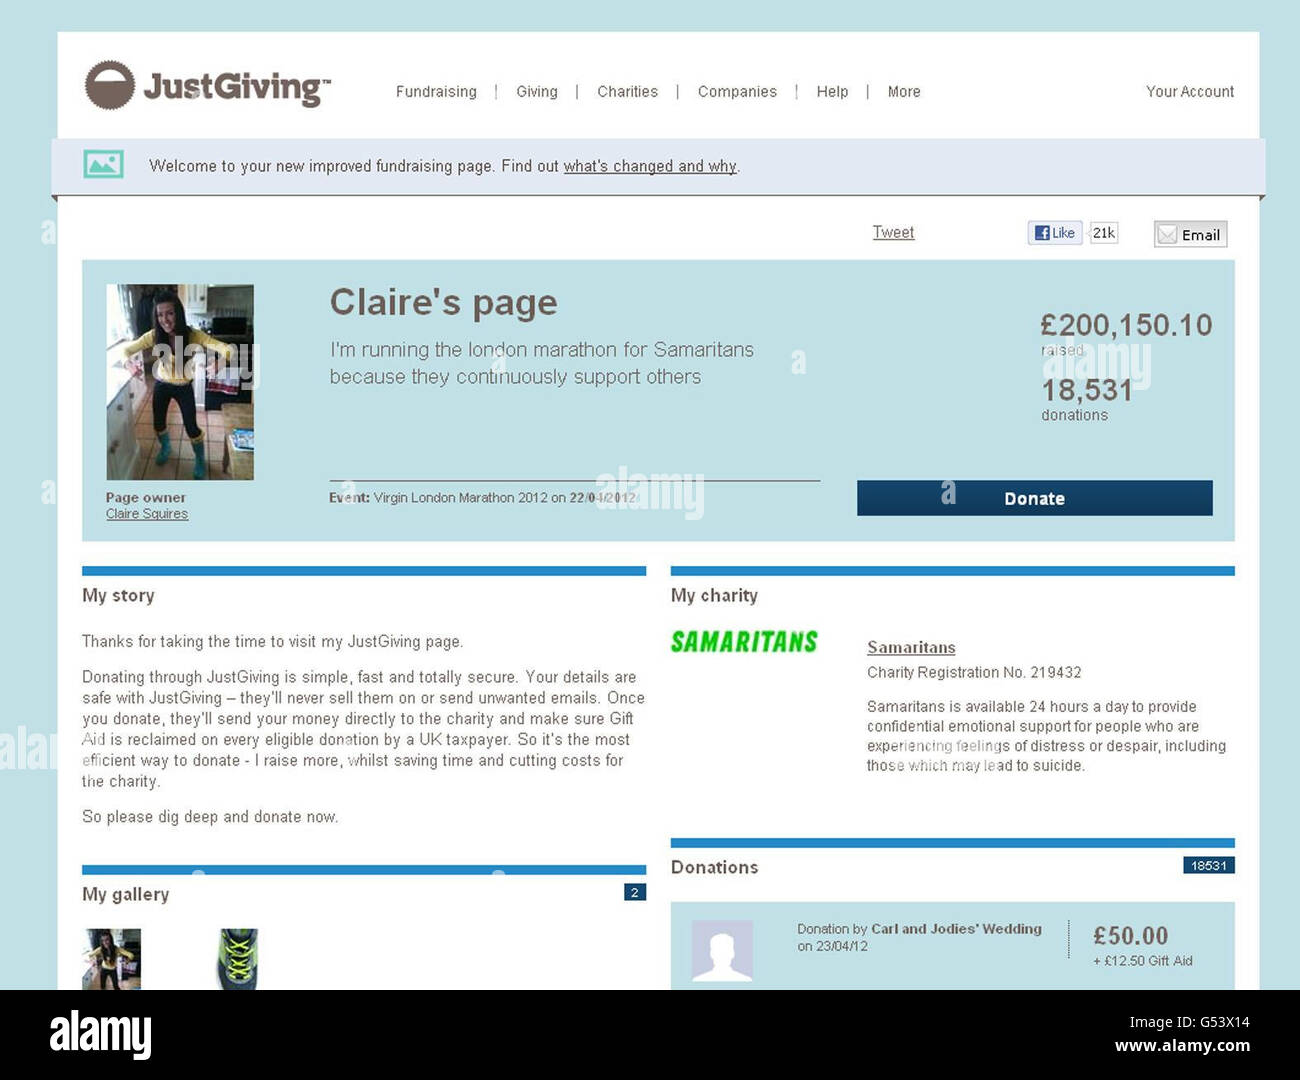 Bildschirmabzug von der JustGiving Charity-Website für Claire Squires, 30, die zusammenbrach und während des gestrigen London-Marathons starb, der heute Abend die &pound;200,000-Marke überschritten hat. Stockfoto